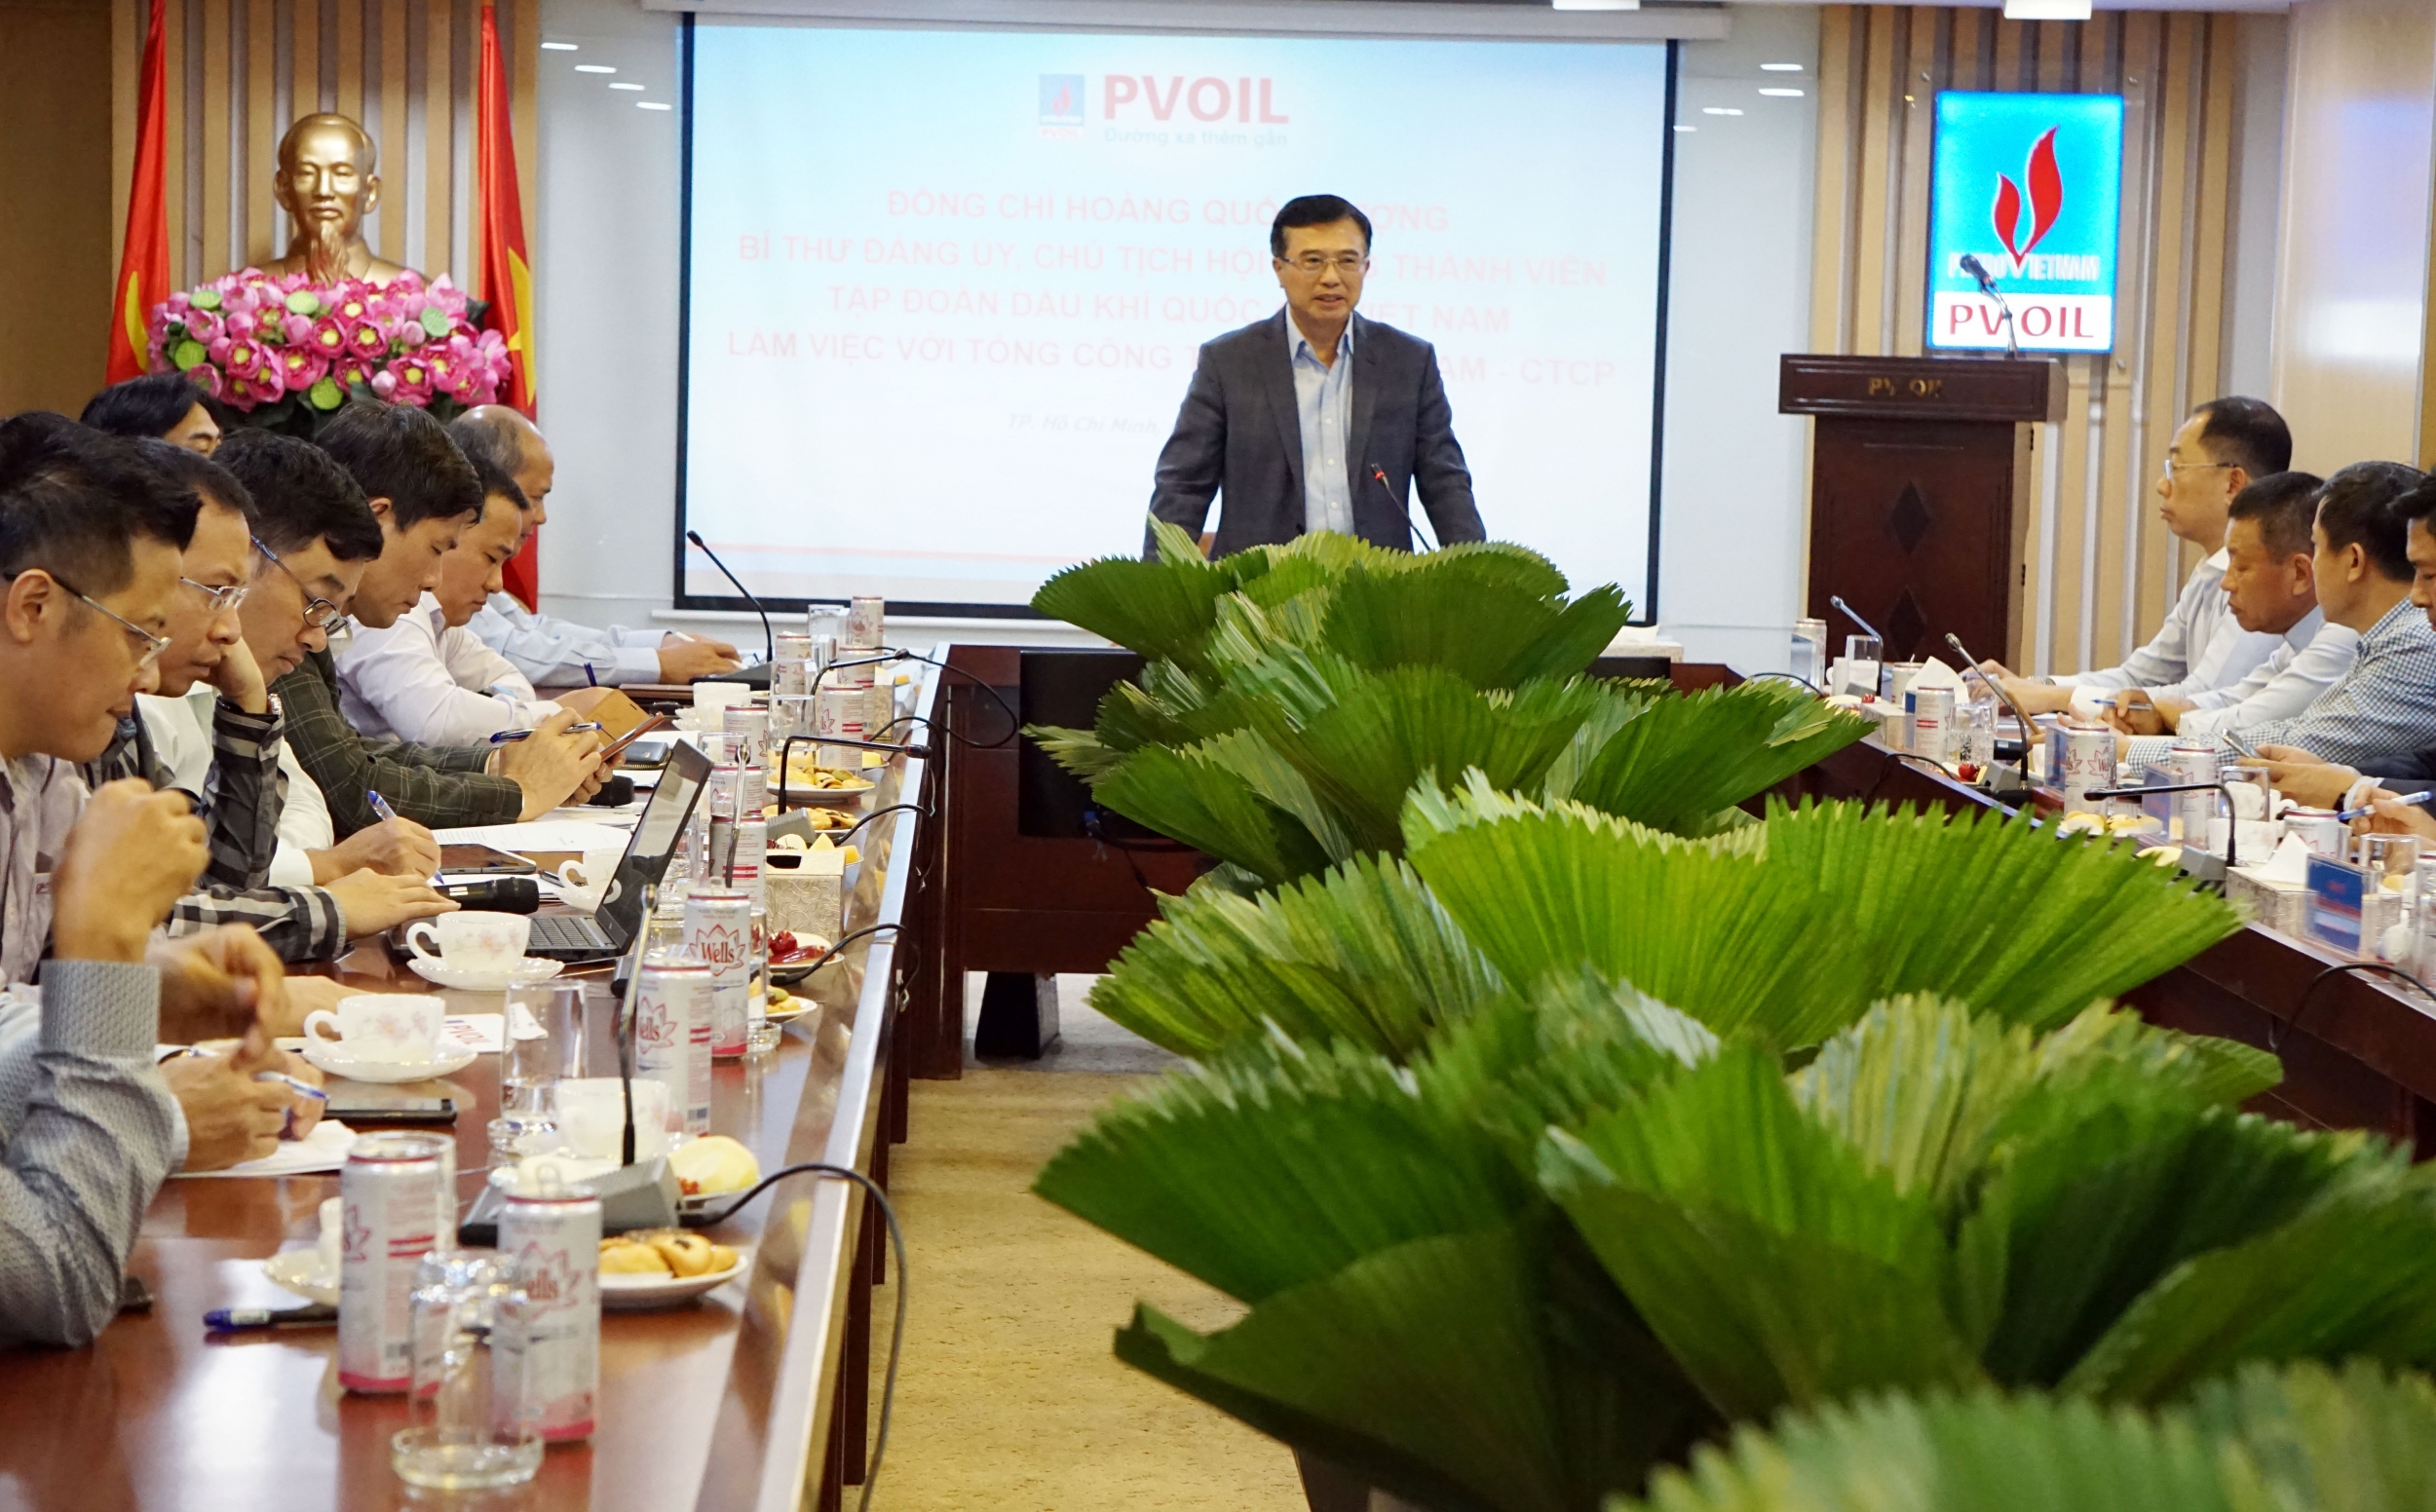 Chủ tịch Petrovietnam làm việc với PVOIL: Đánh giá cao nỗ lực kinh doanh và định hướng phát triển của PVOIL